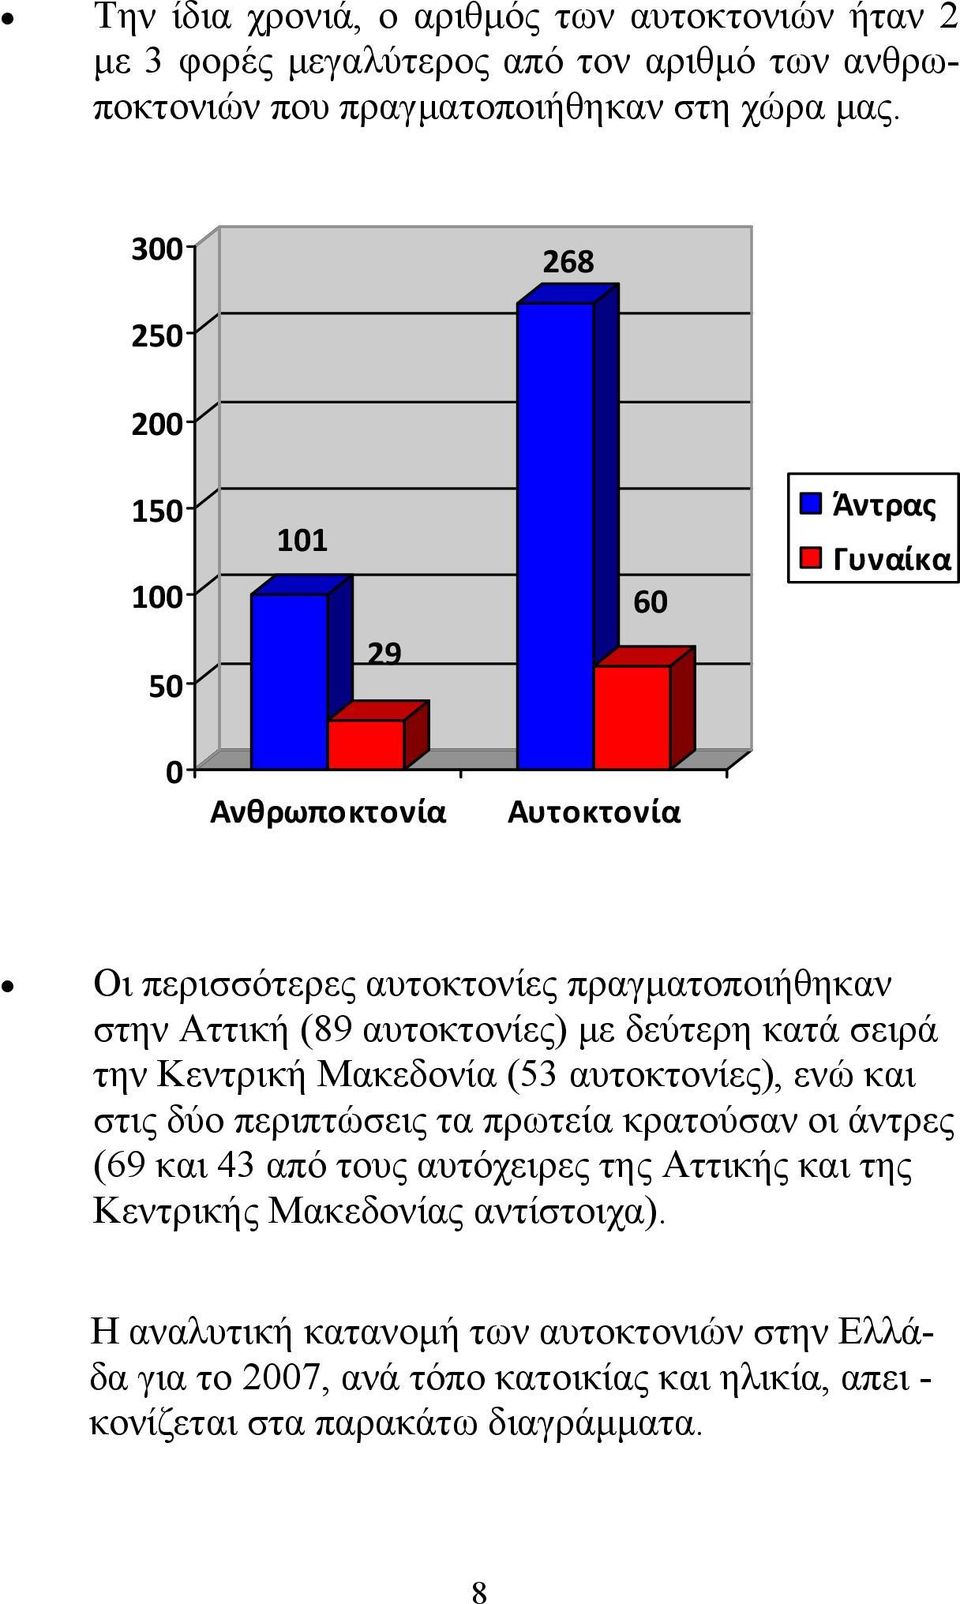 δεύτερη κατά σειρά την Κεντρική Μακεδονία (53 αυτοκτονίες), ενώ και στις δύο περιπτώσεις τα πρωτεία κρατούσαν οι άντρες (69 και 43 από τους αυτόχειρες της